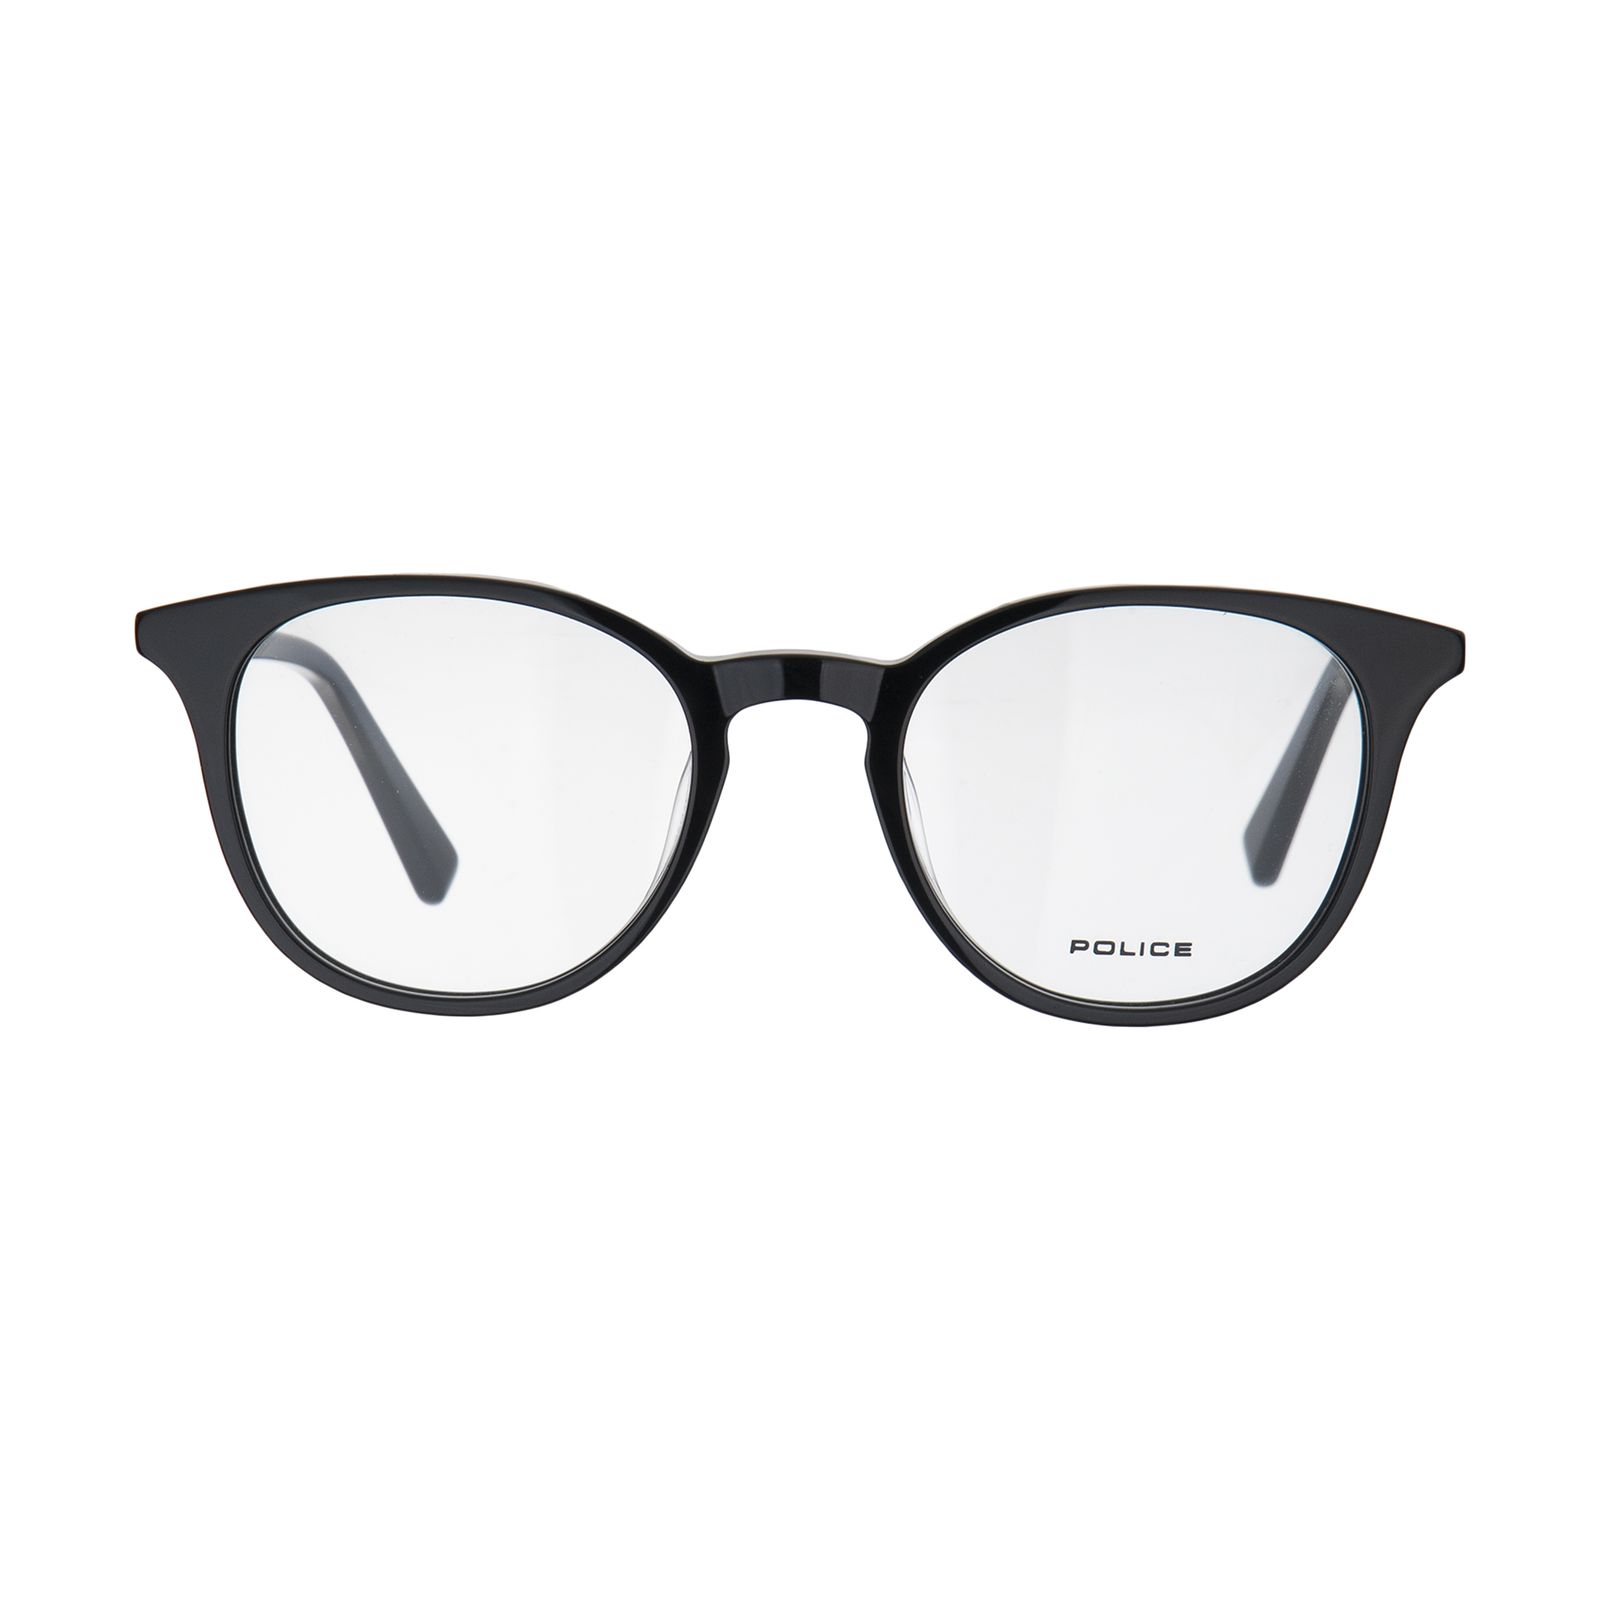 فریم عینک طبی پلیس مدل VPL817-0700 -  - 1